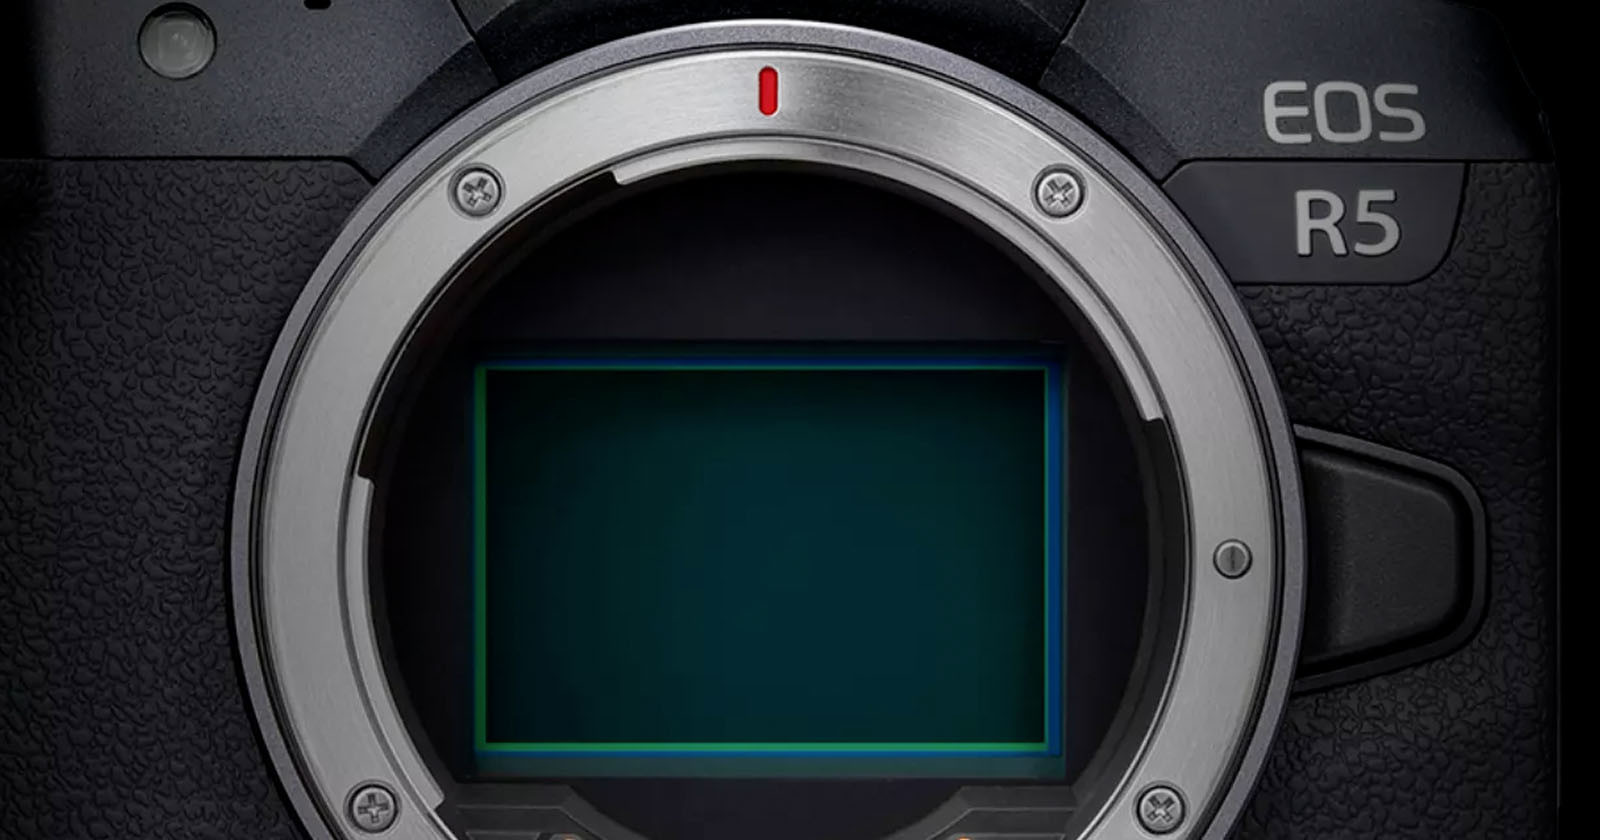 No Canon R5 II in 2023, R5 to Get Huge Firmware Update Instead: Report